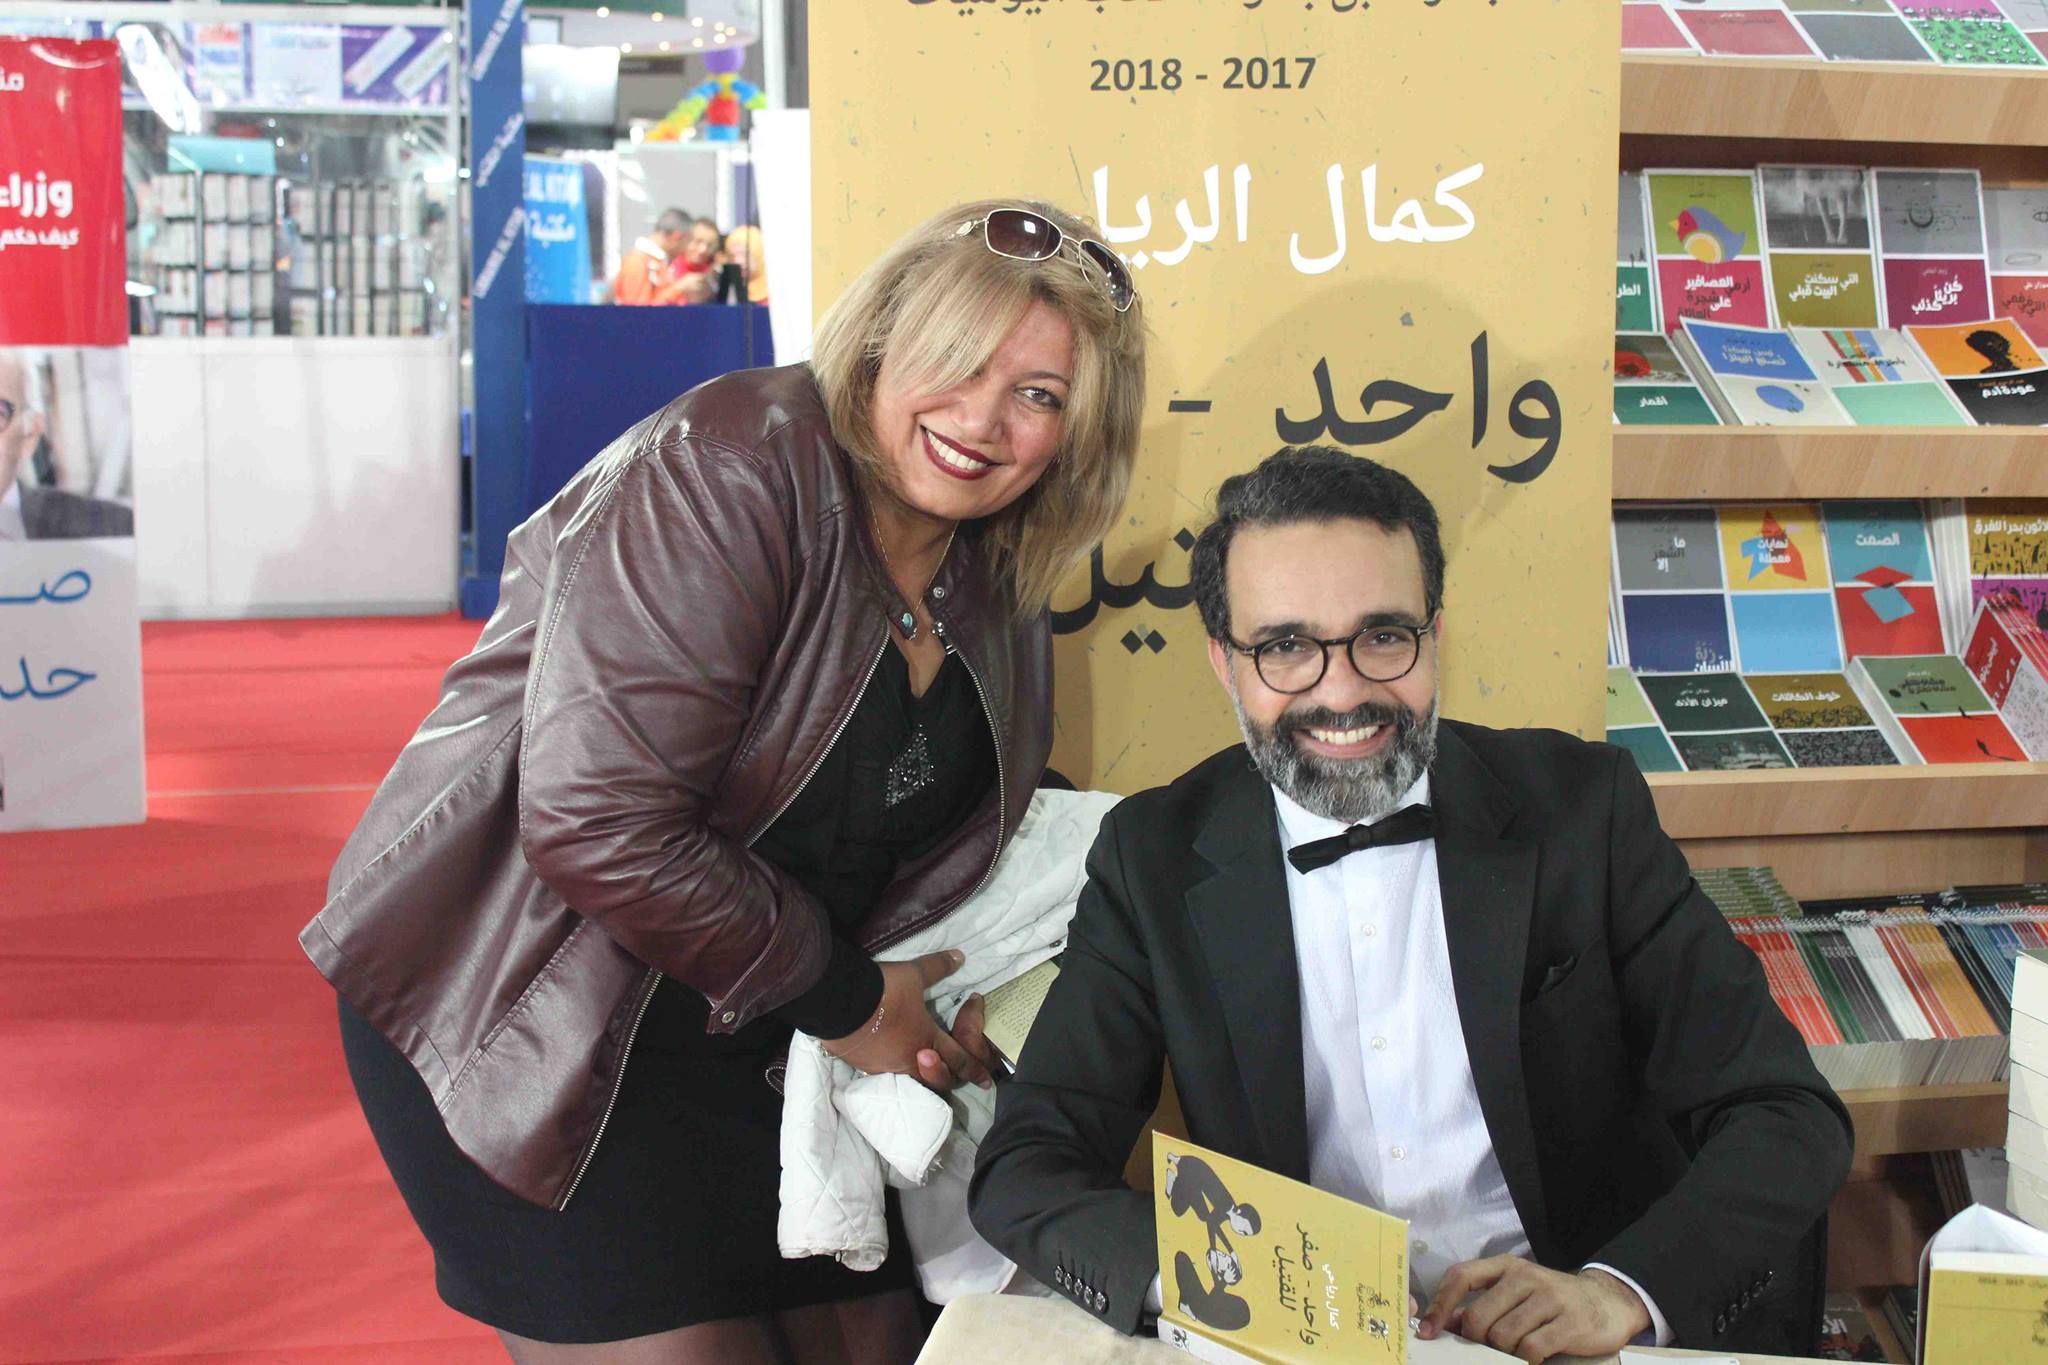 كمال الرياحى يوقع كتابه واحد صفر للقتيل الفائز بجائزة ابن بطوطة فى معرض تونس (3)